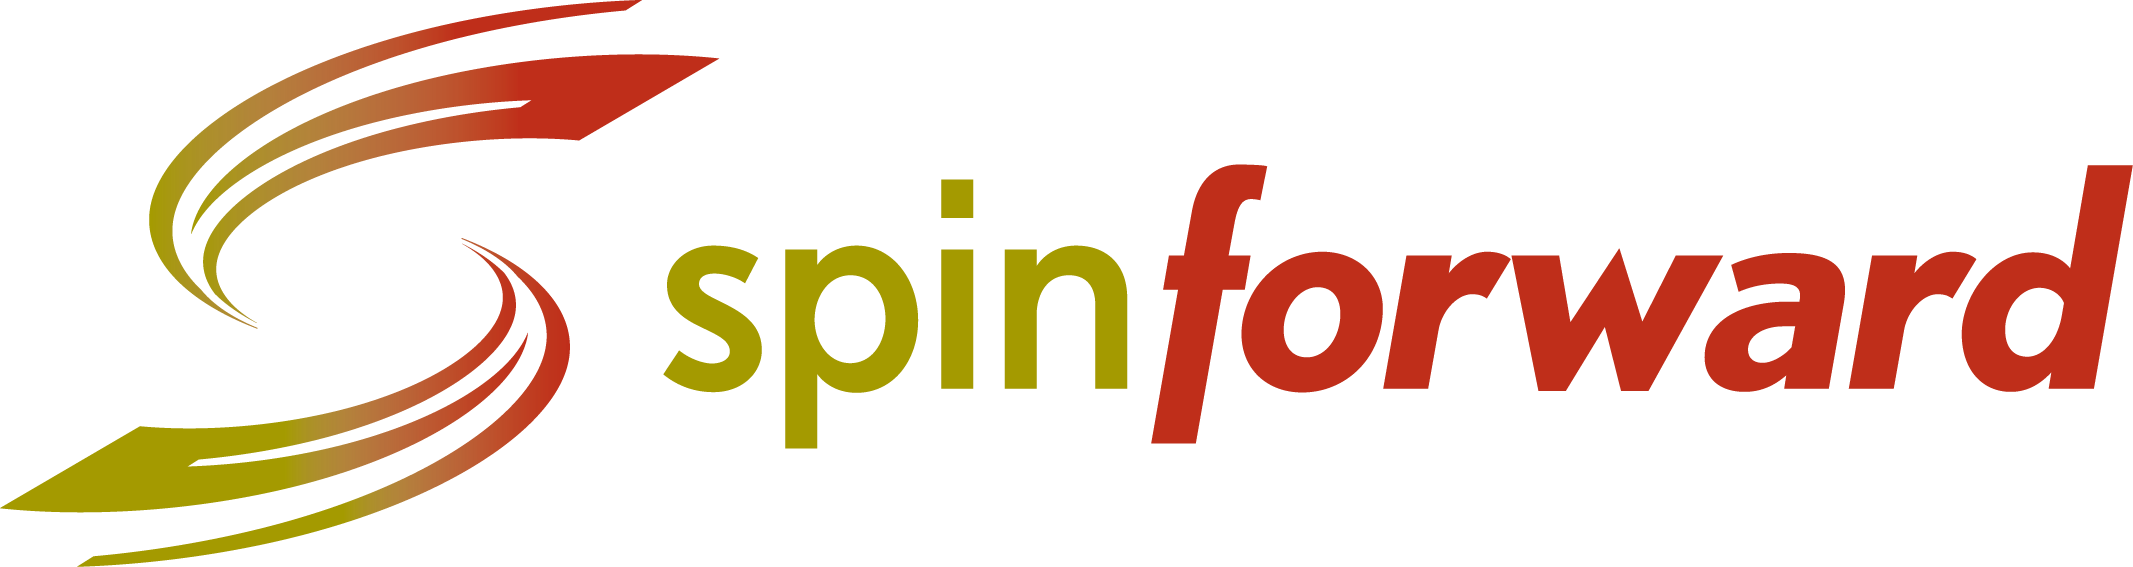 Spinforward Logo